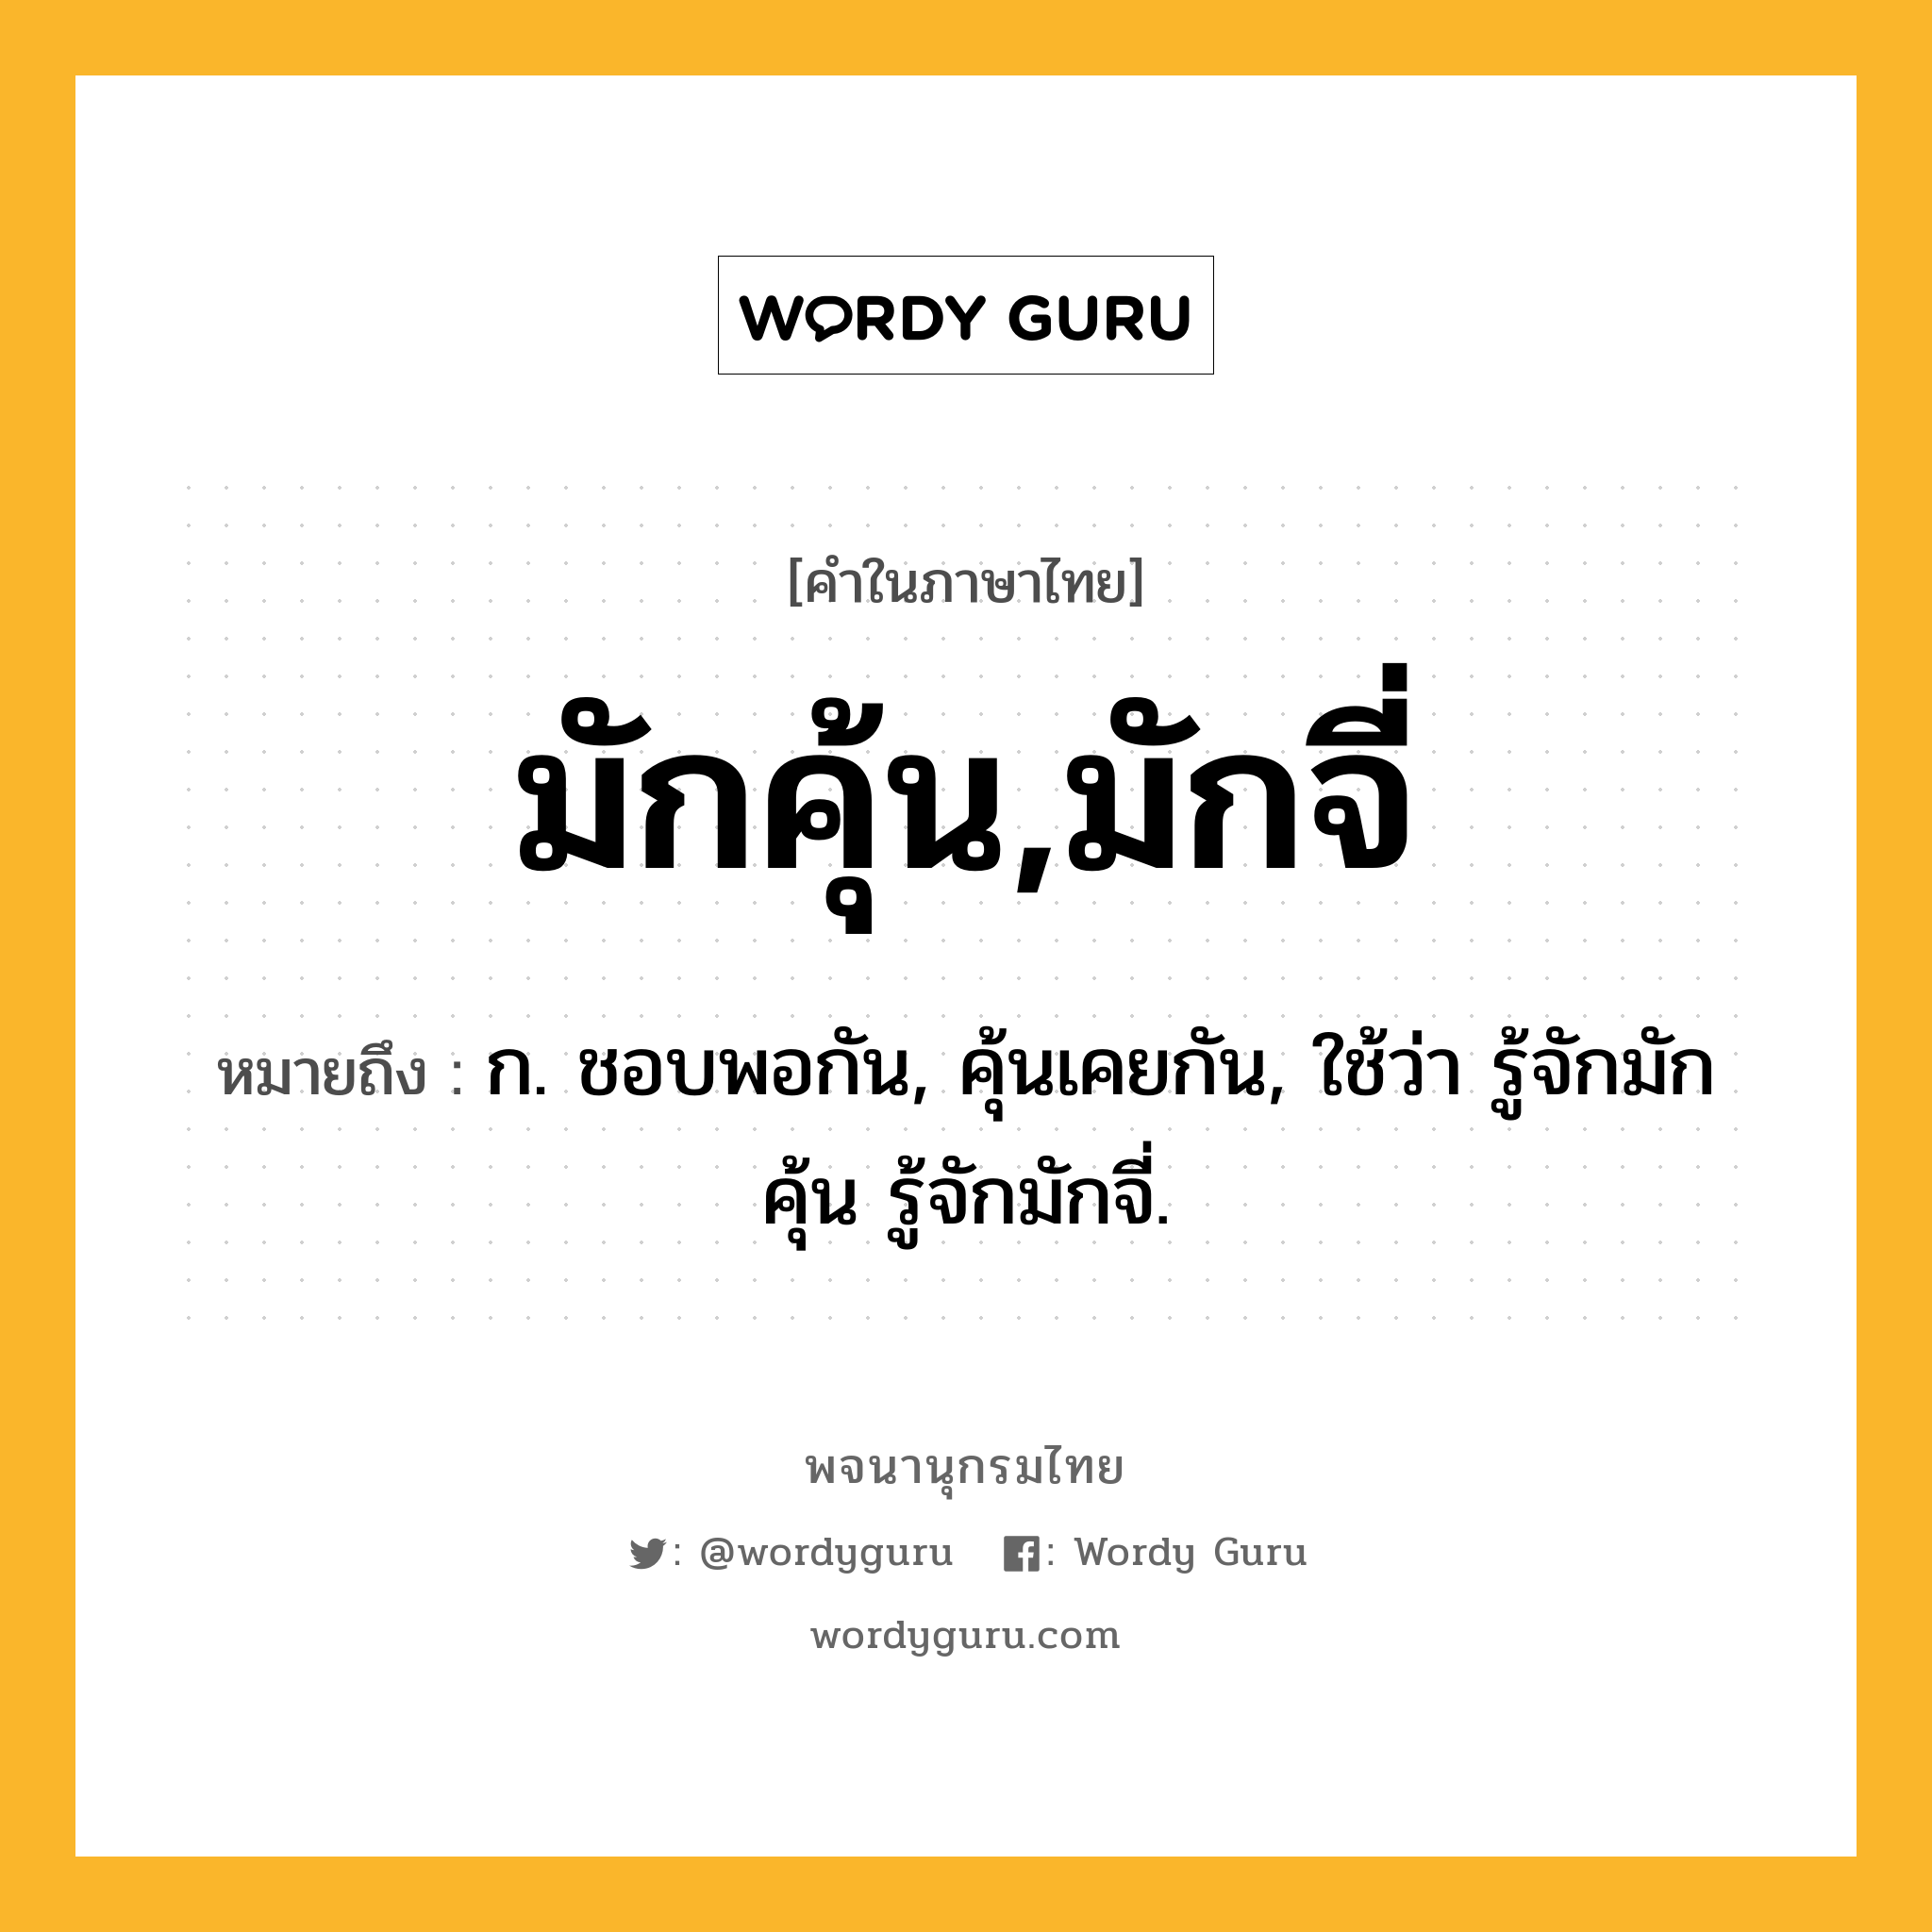 มักคุ้น,มักจี่ ความหมาย หมายถึงอะไร?, คำในภาษาไทย มักคุ้น,มักจี่ หมายถึง ก. ชอบพอกัน, คุ้นเคยกัน, ใช้ว่า รู้จักมักคุ้น รู้จักมักจี่.